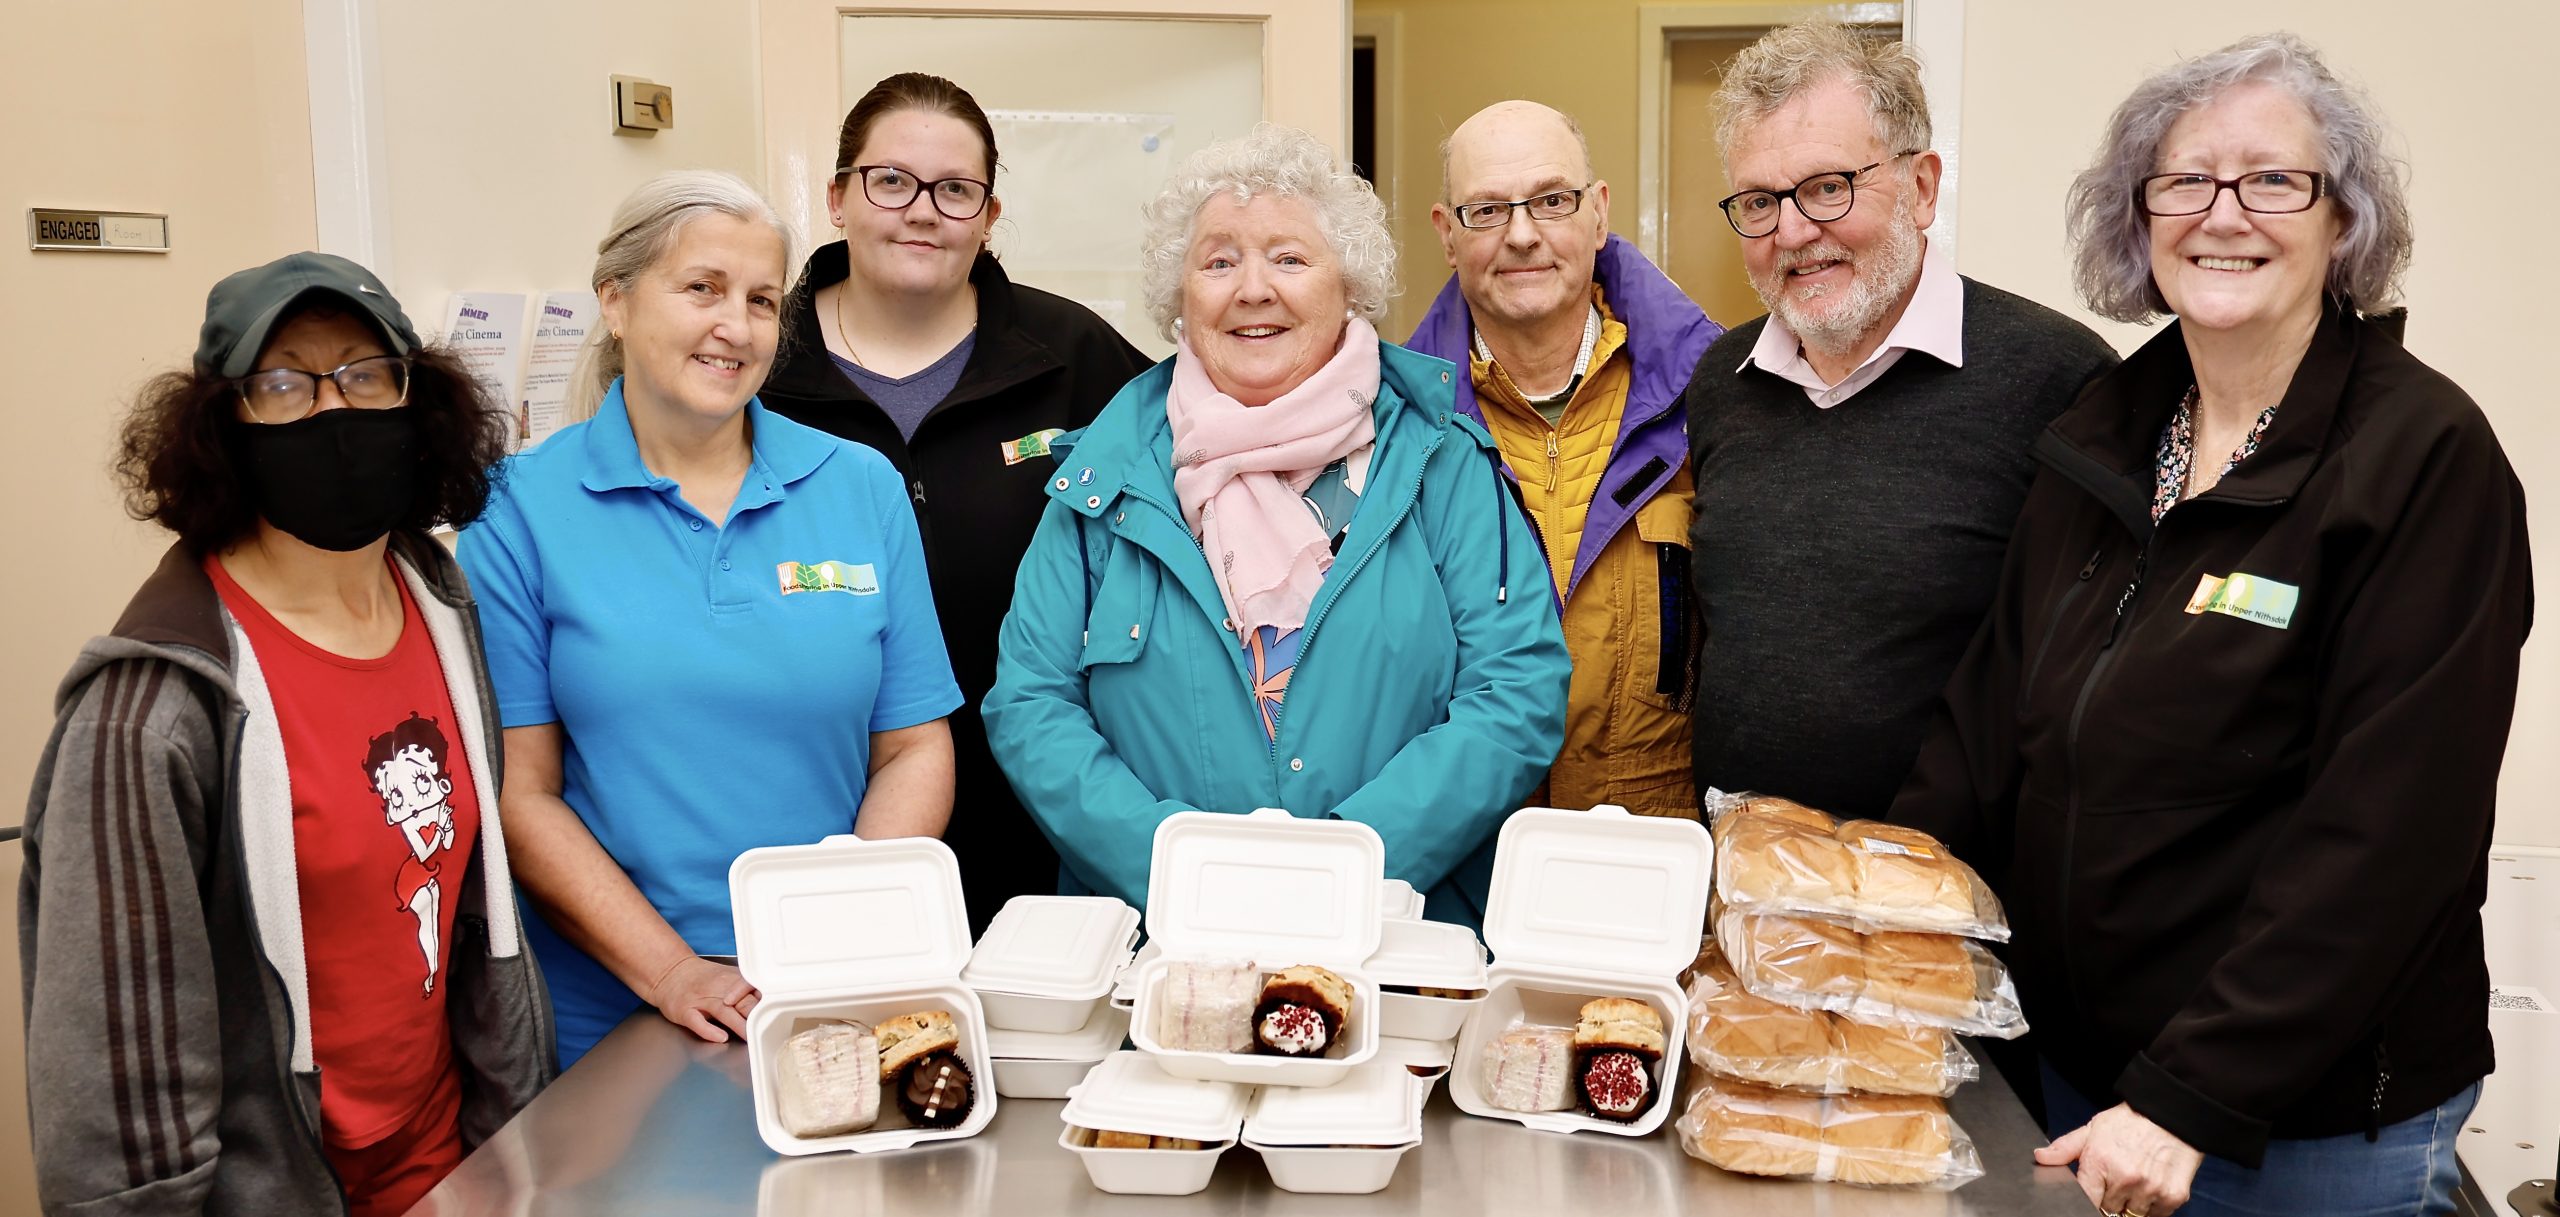 MP joins volunteers in Kirkconnel for tea